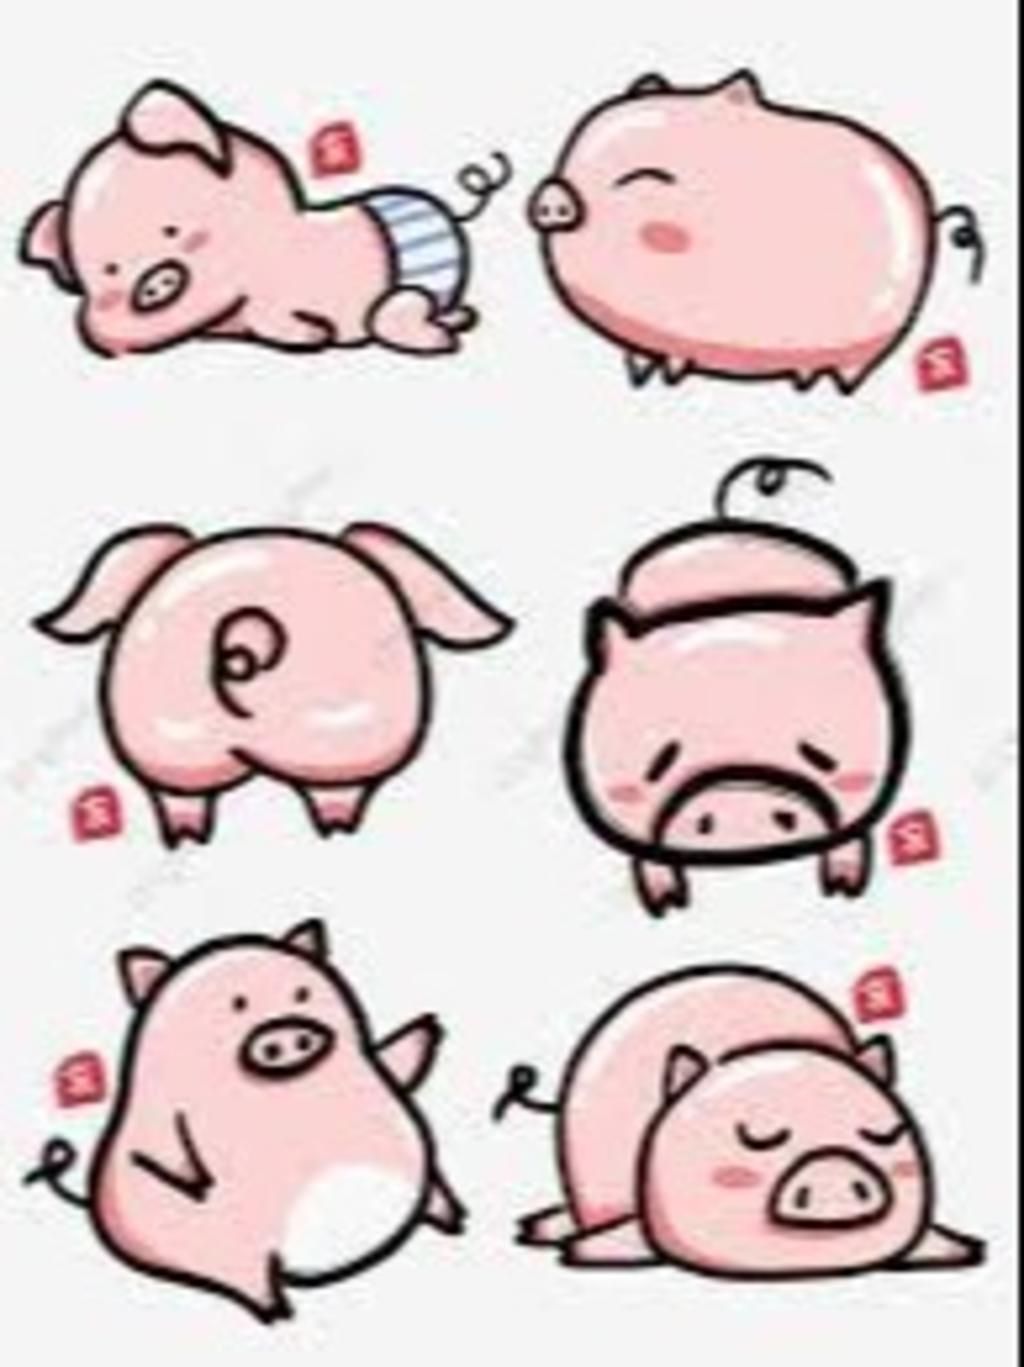 Vẽ lợn con cute theo mẫu dưới đây N/L : Chiêu mộ thành viên câu ...